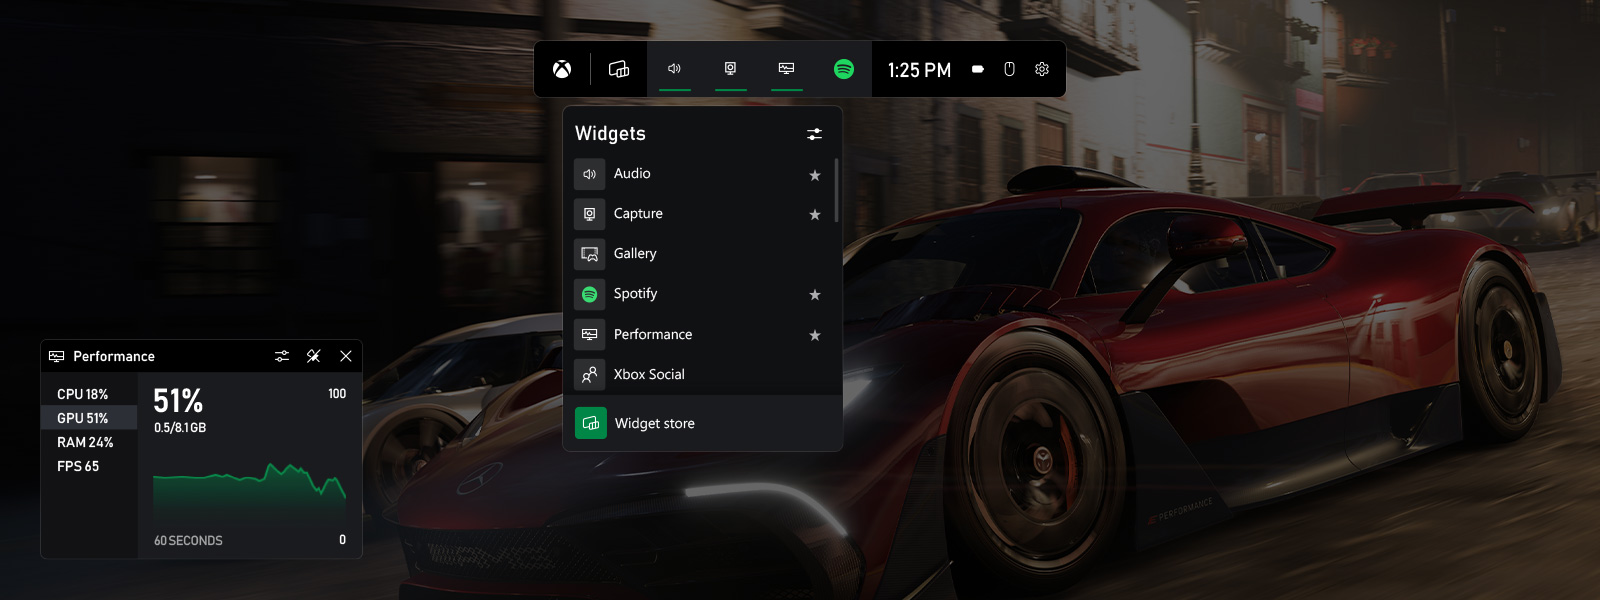 Captura de pantalla de la herramienta de recursos en el panel de Xbox